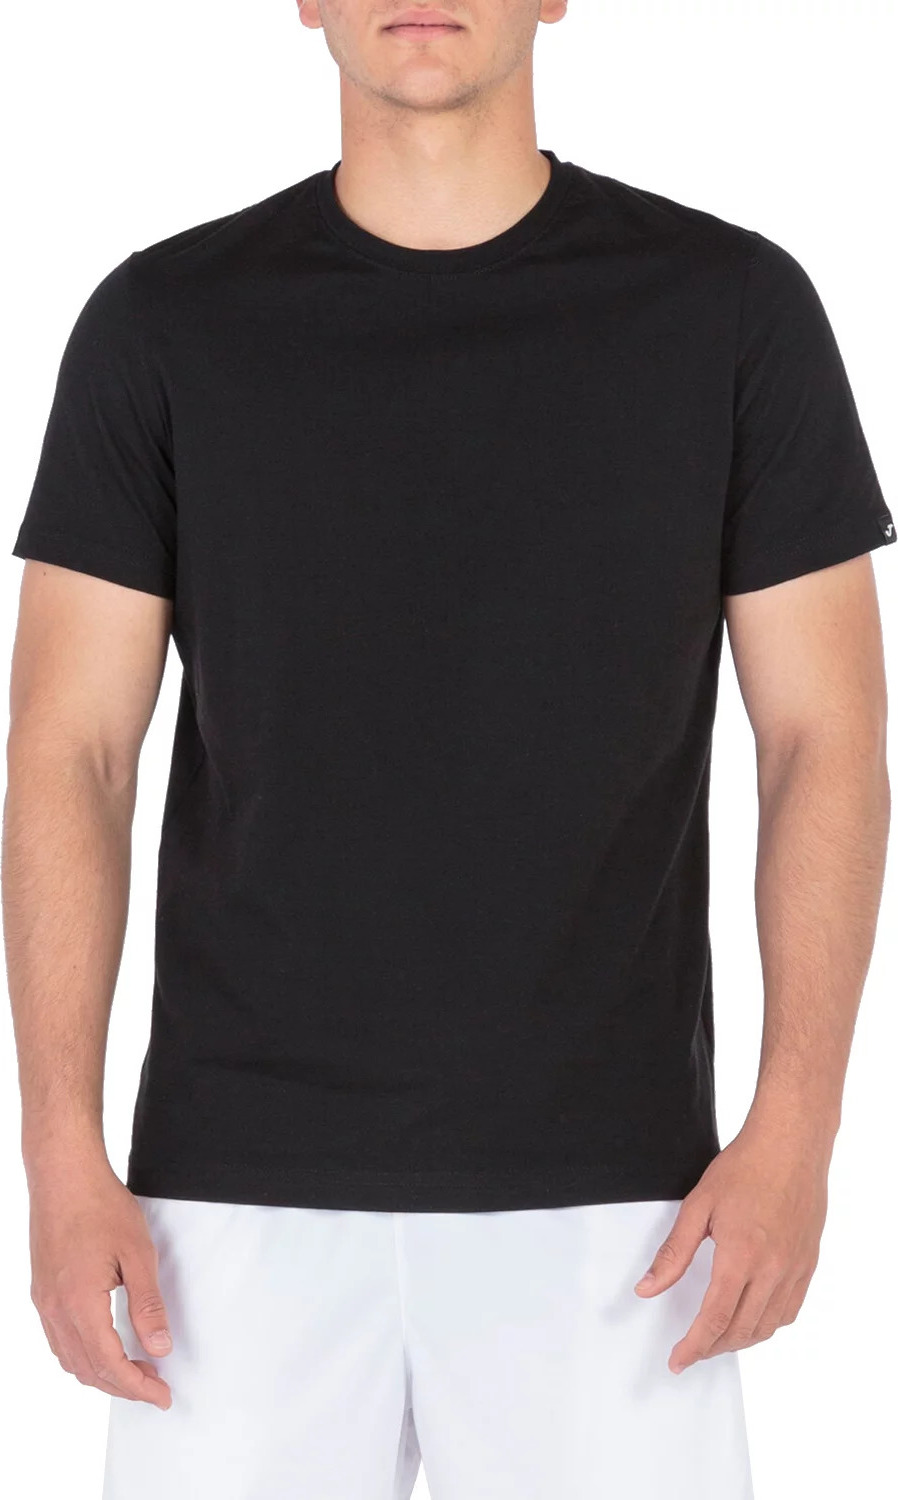 Černé pánské tričko Joma Desert Tee 101739-100 Velikost: M